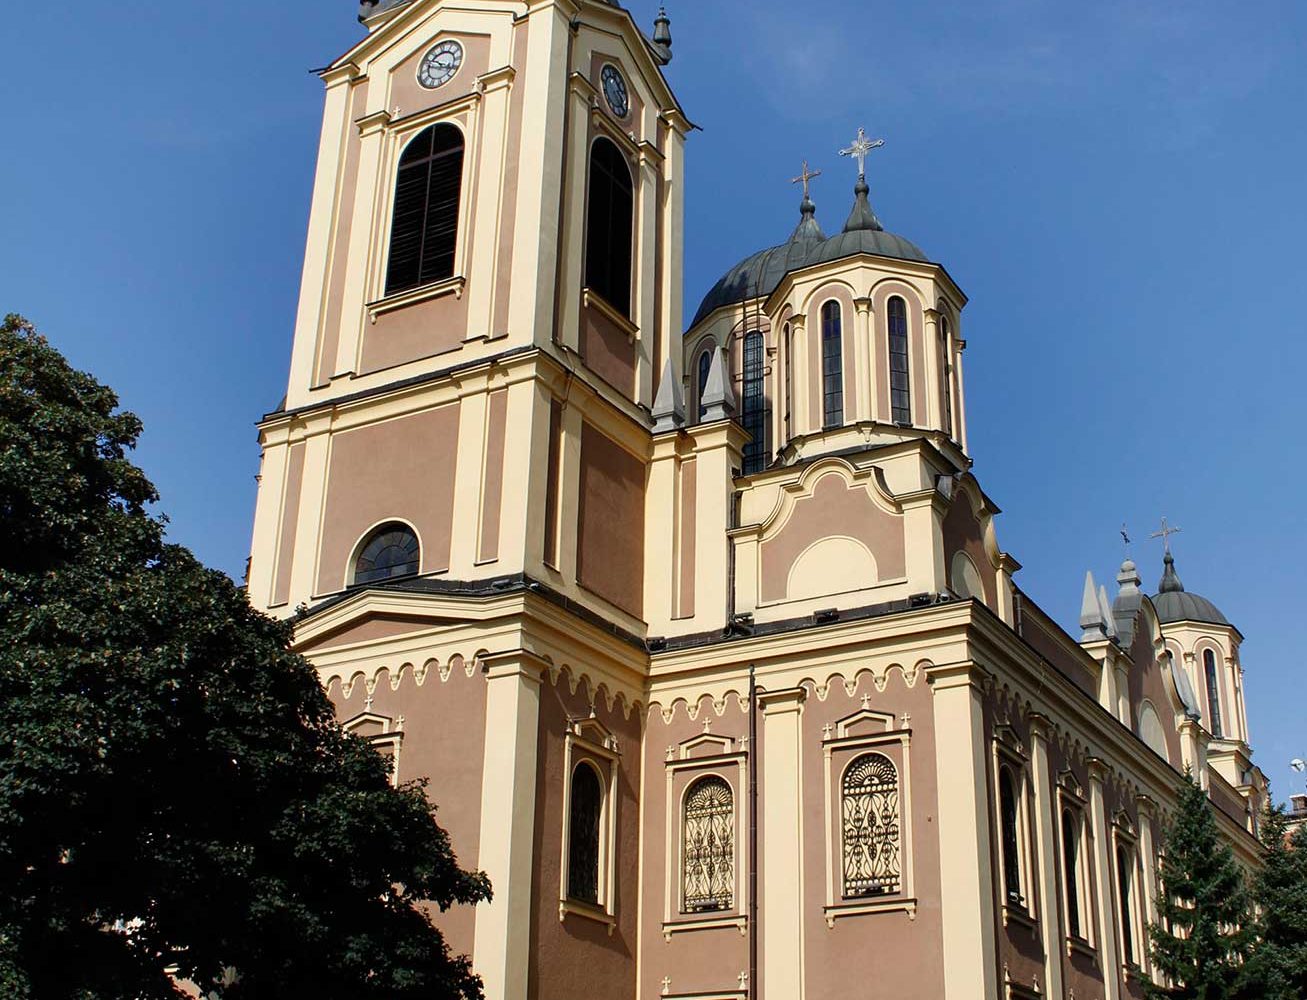 Sarajevo’s Orthodox Cathedral